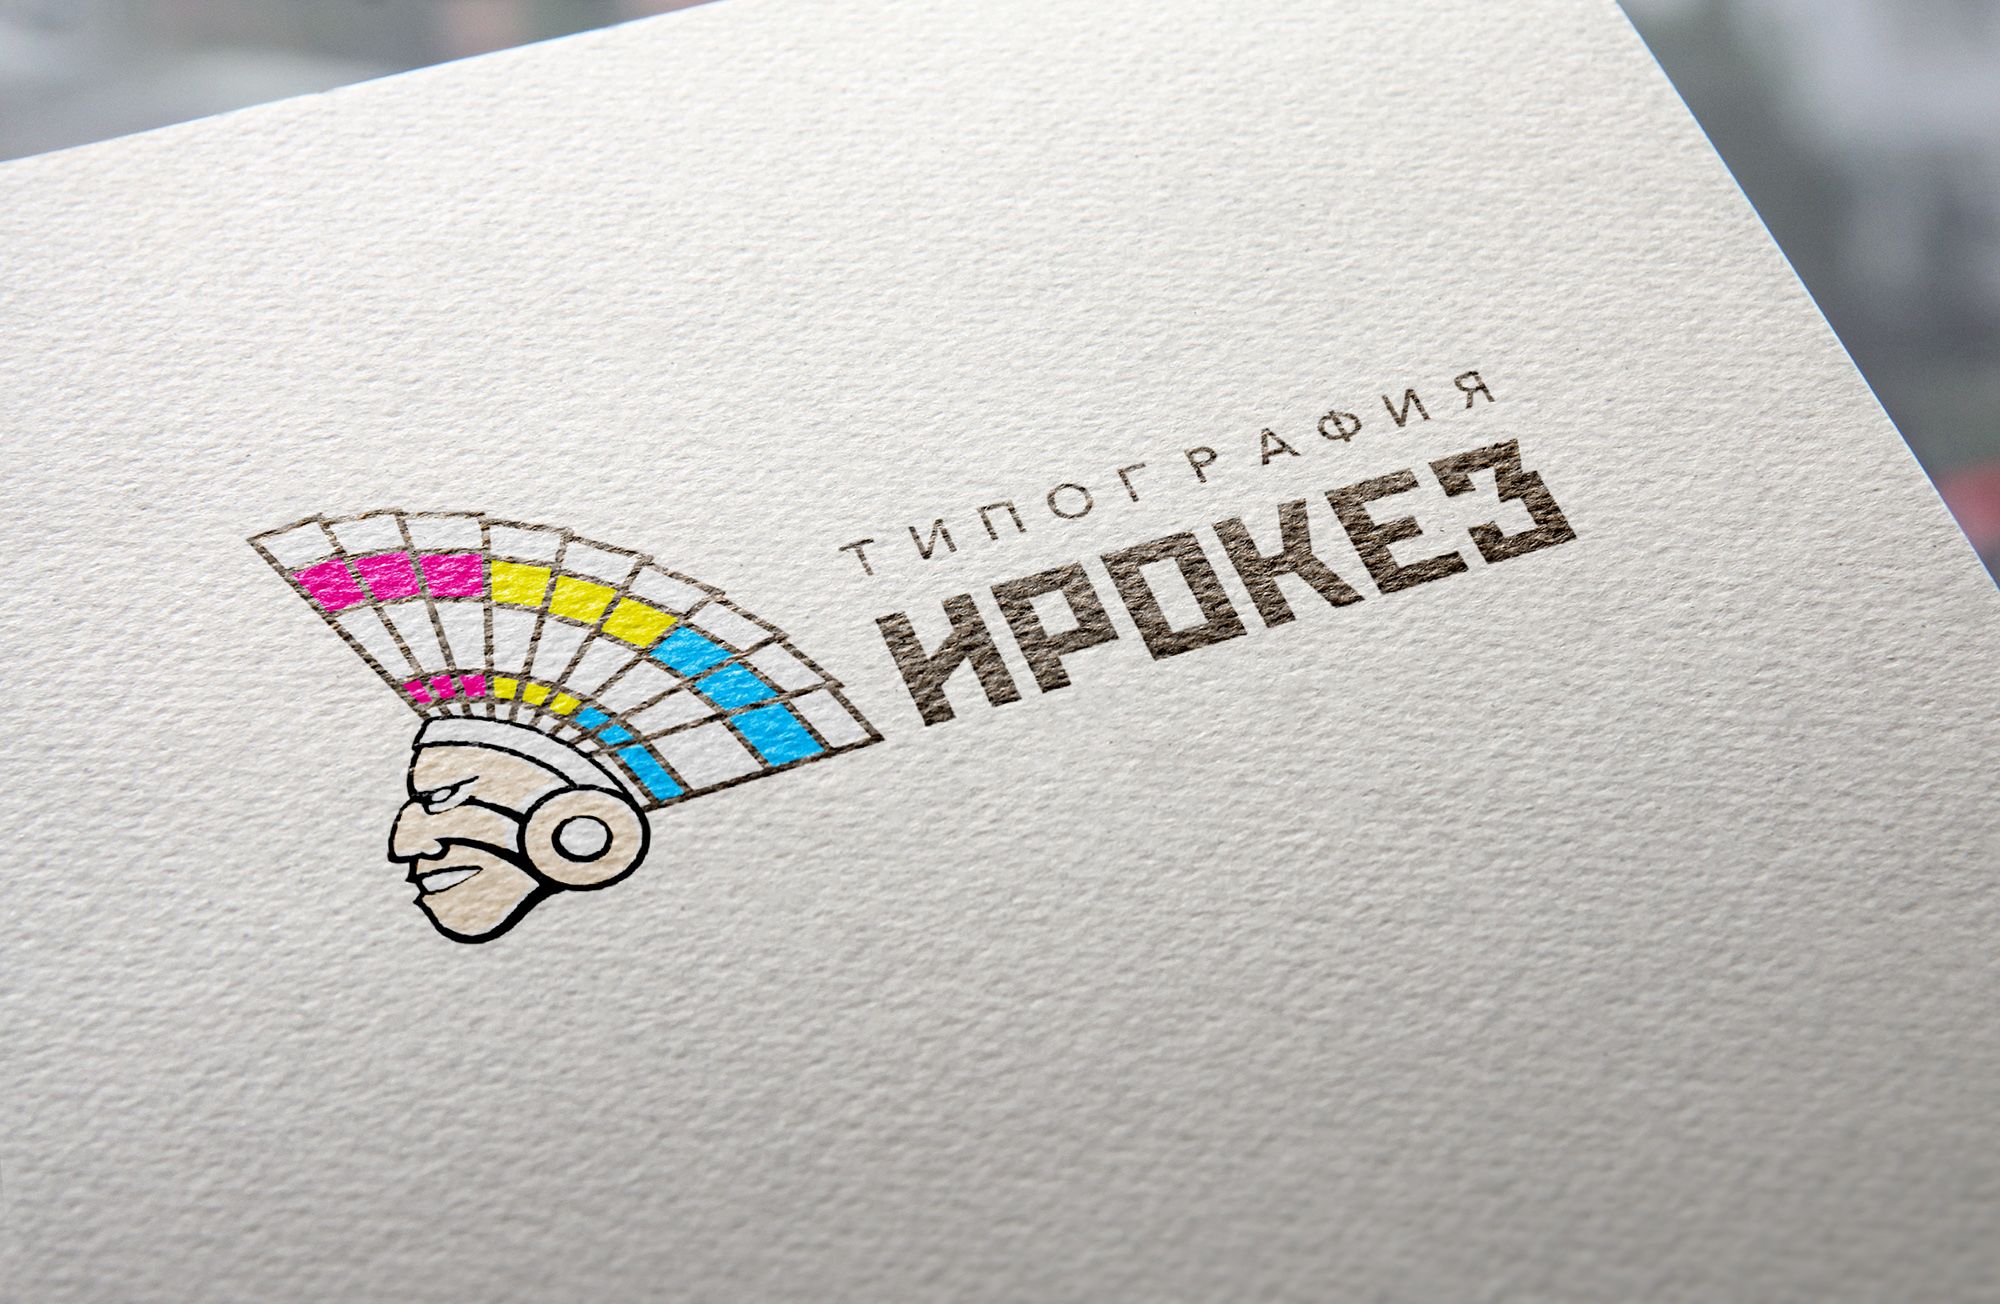 Редизайн лого и дизайн ФС для типографии Ирокез - дизайнер markosov